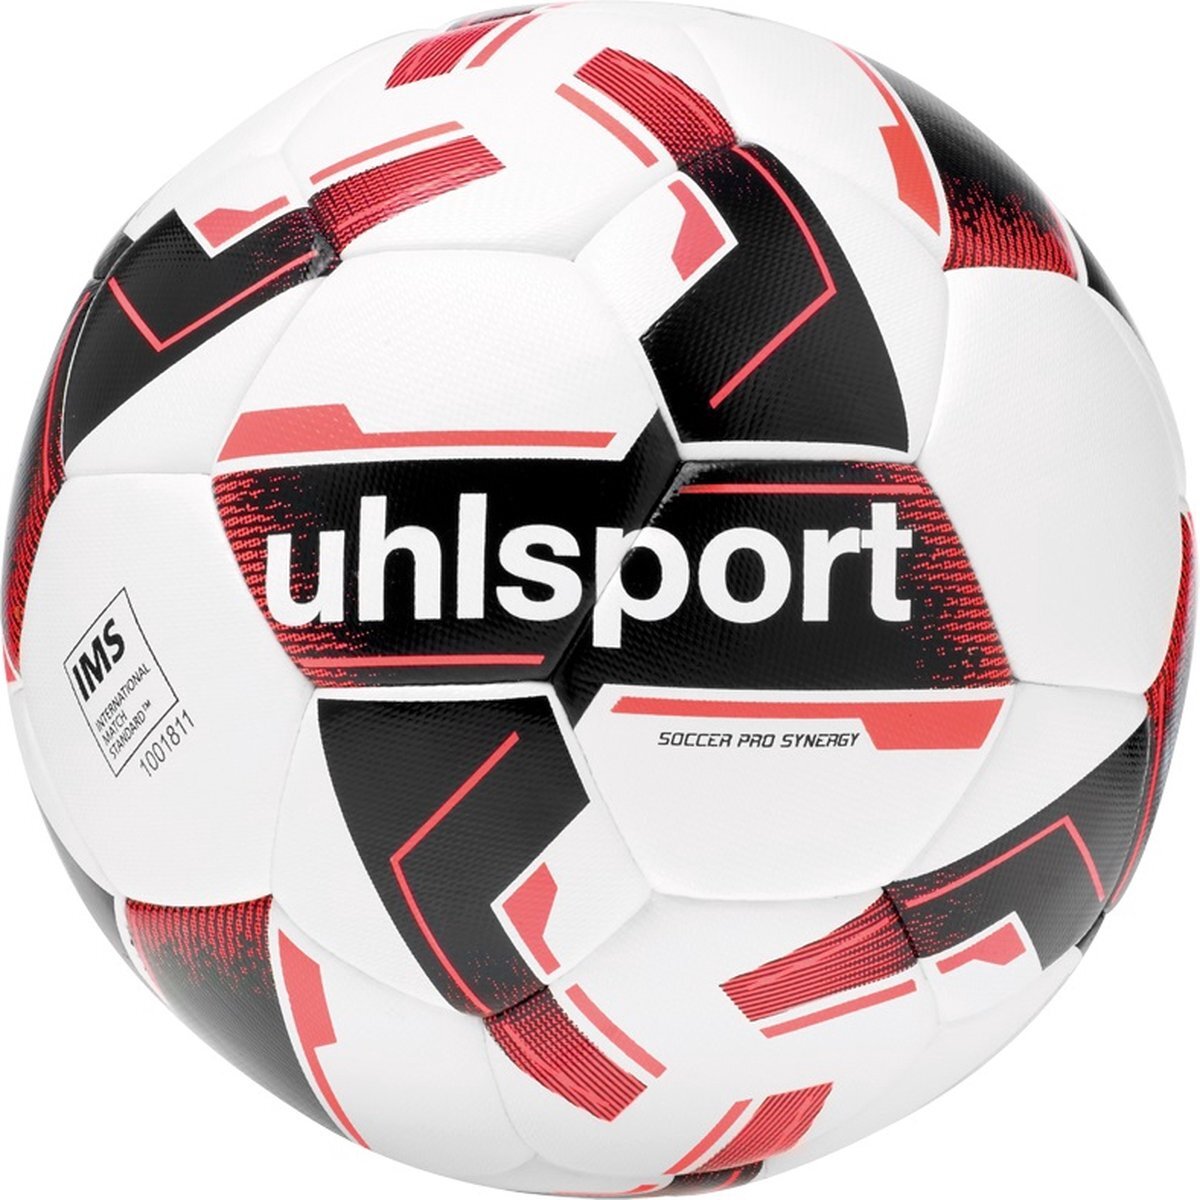 Uhlsport Soccer Pro Synergy ballen wit/zwart/fluo rood 4